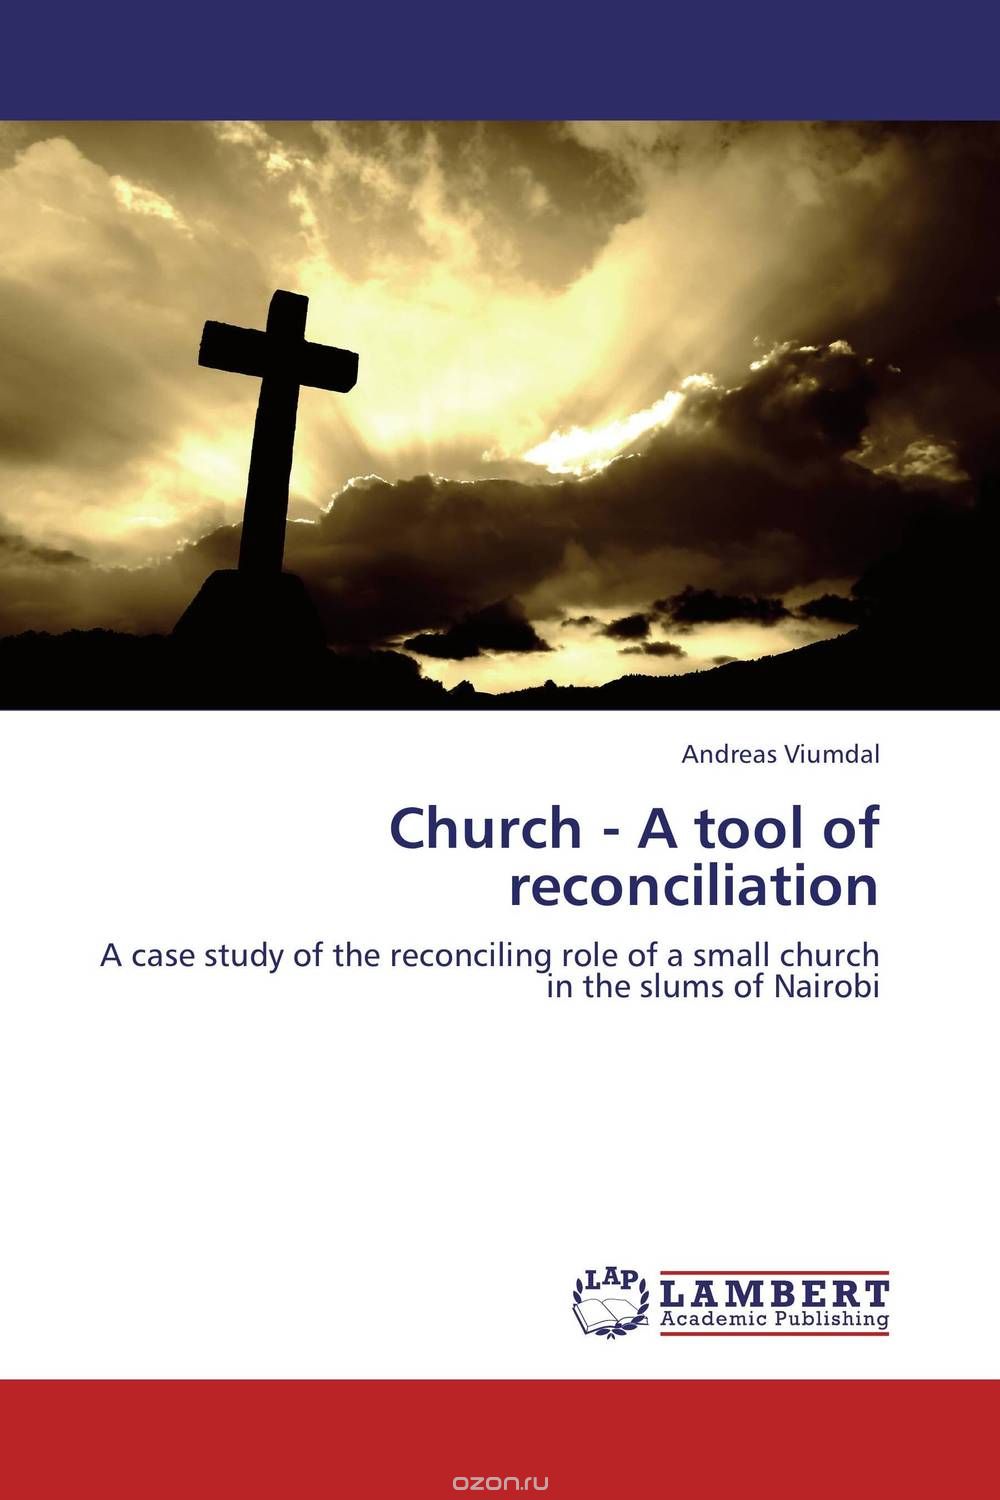 Скачать книгу "Church - A tool of reconciliation"